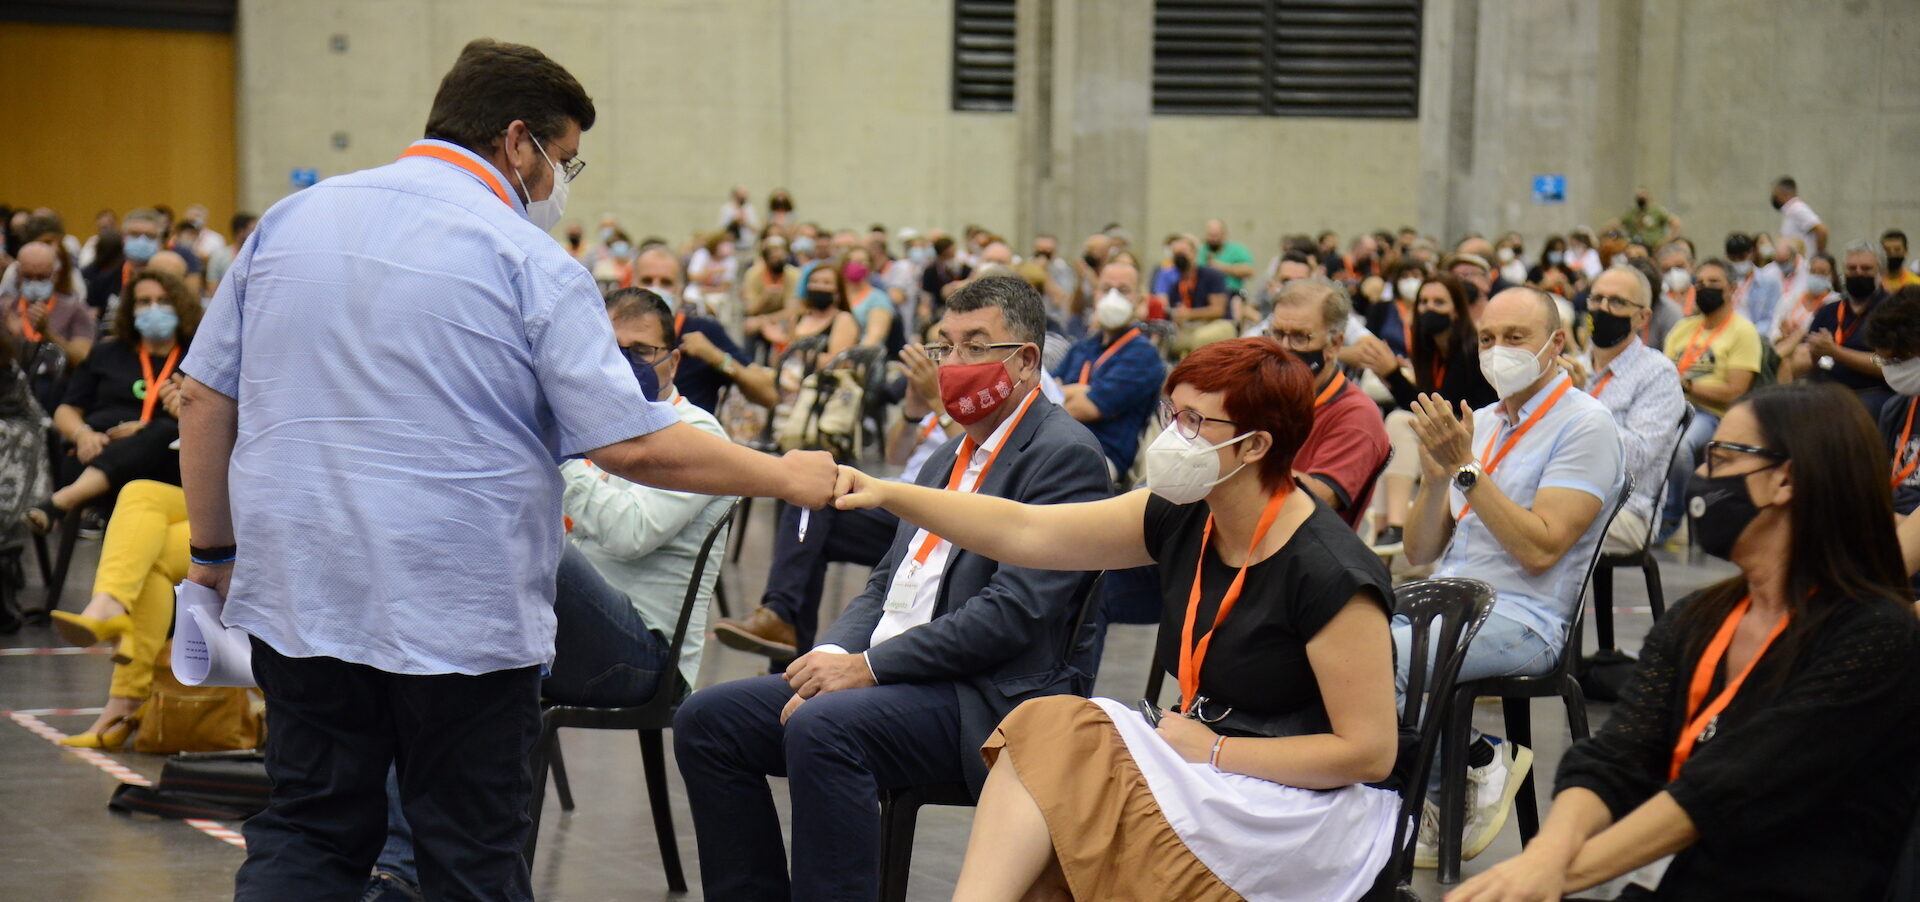 Àlex Ruiz saluda Àgueda Micó després de pronunciar el discurs de candidatura. (Fotos: Prats i Camps)